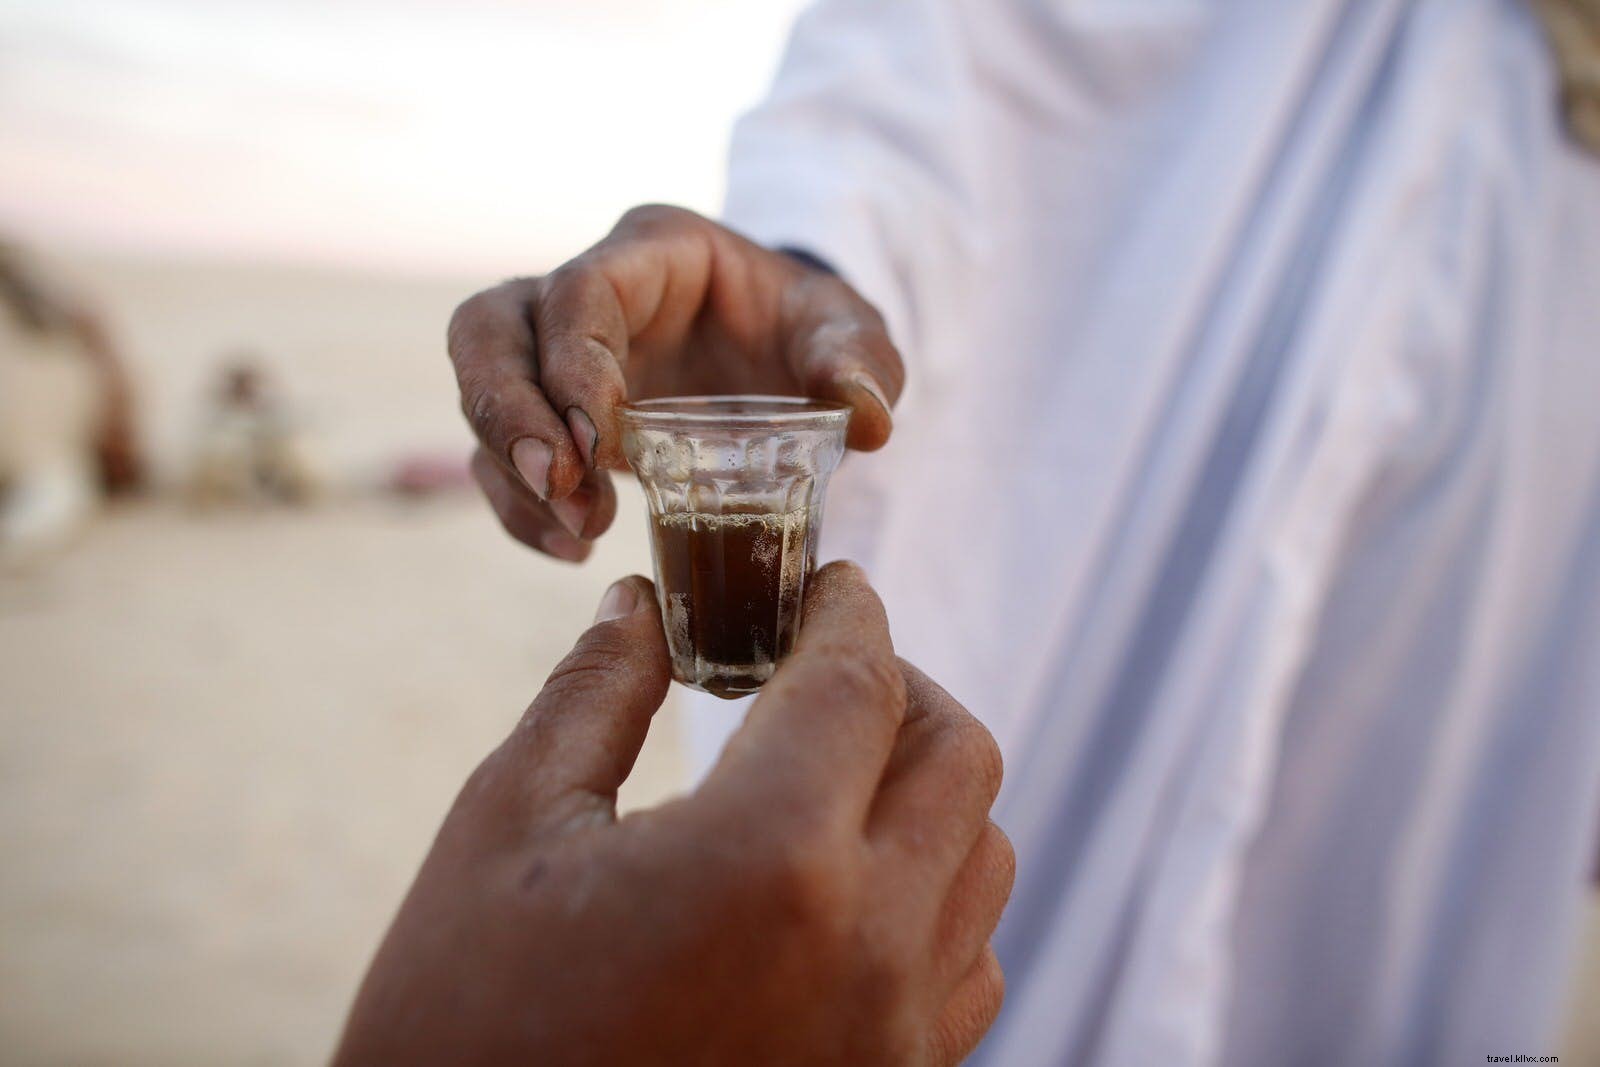 Odisséia no deserto:planejando sua viagem para o Saara Tunisino 